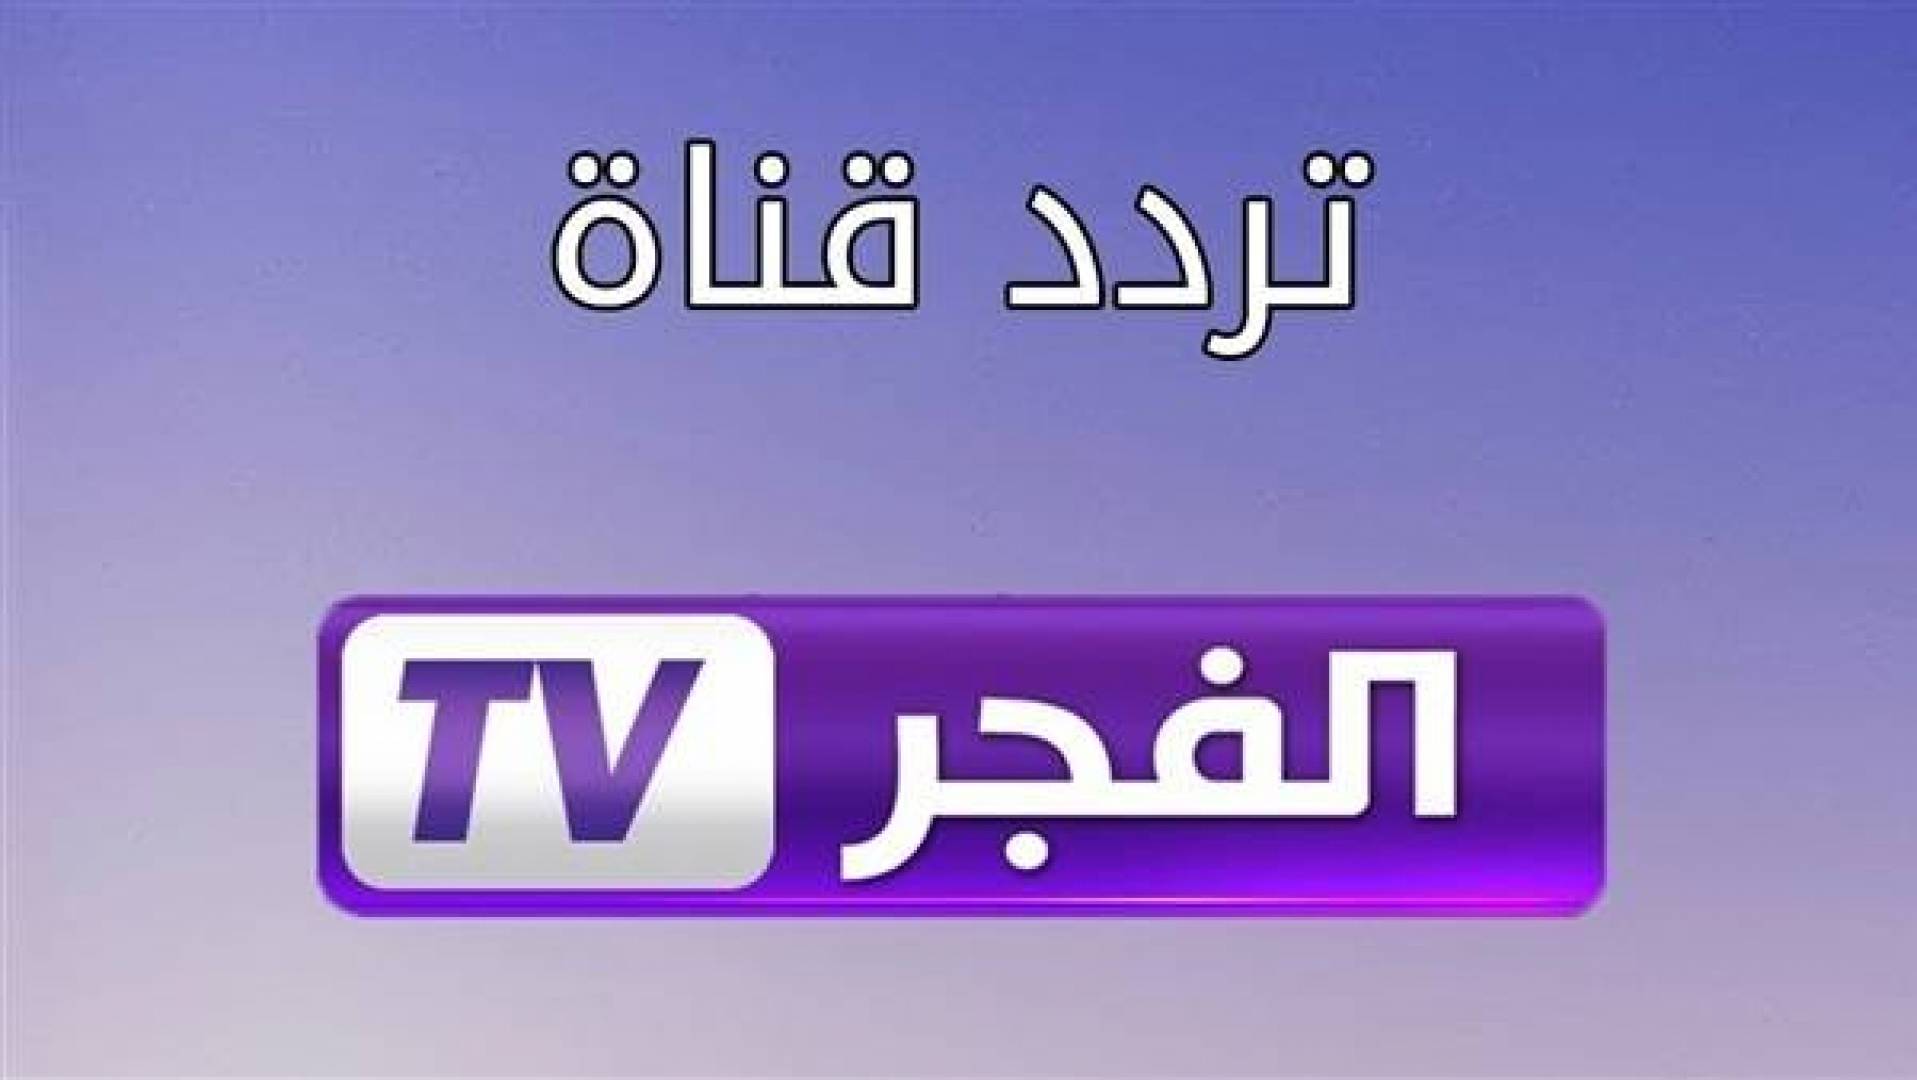 باقة تردد قناة الفجر الجزائرية 2020 لمشاهدة مسلسل قيامة عثمان الحلقة 30 ومسلسل نهضة السلاجقة الحلقة 4